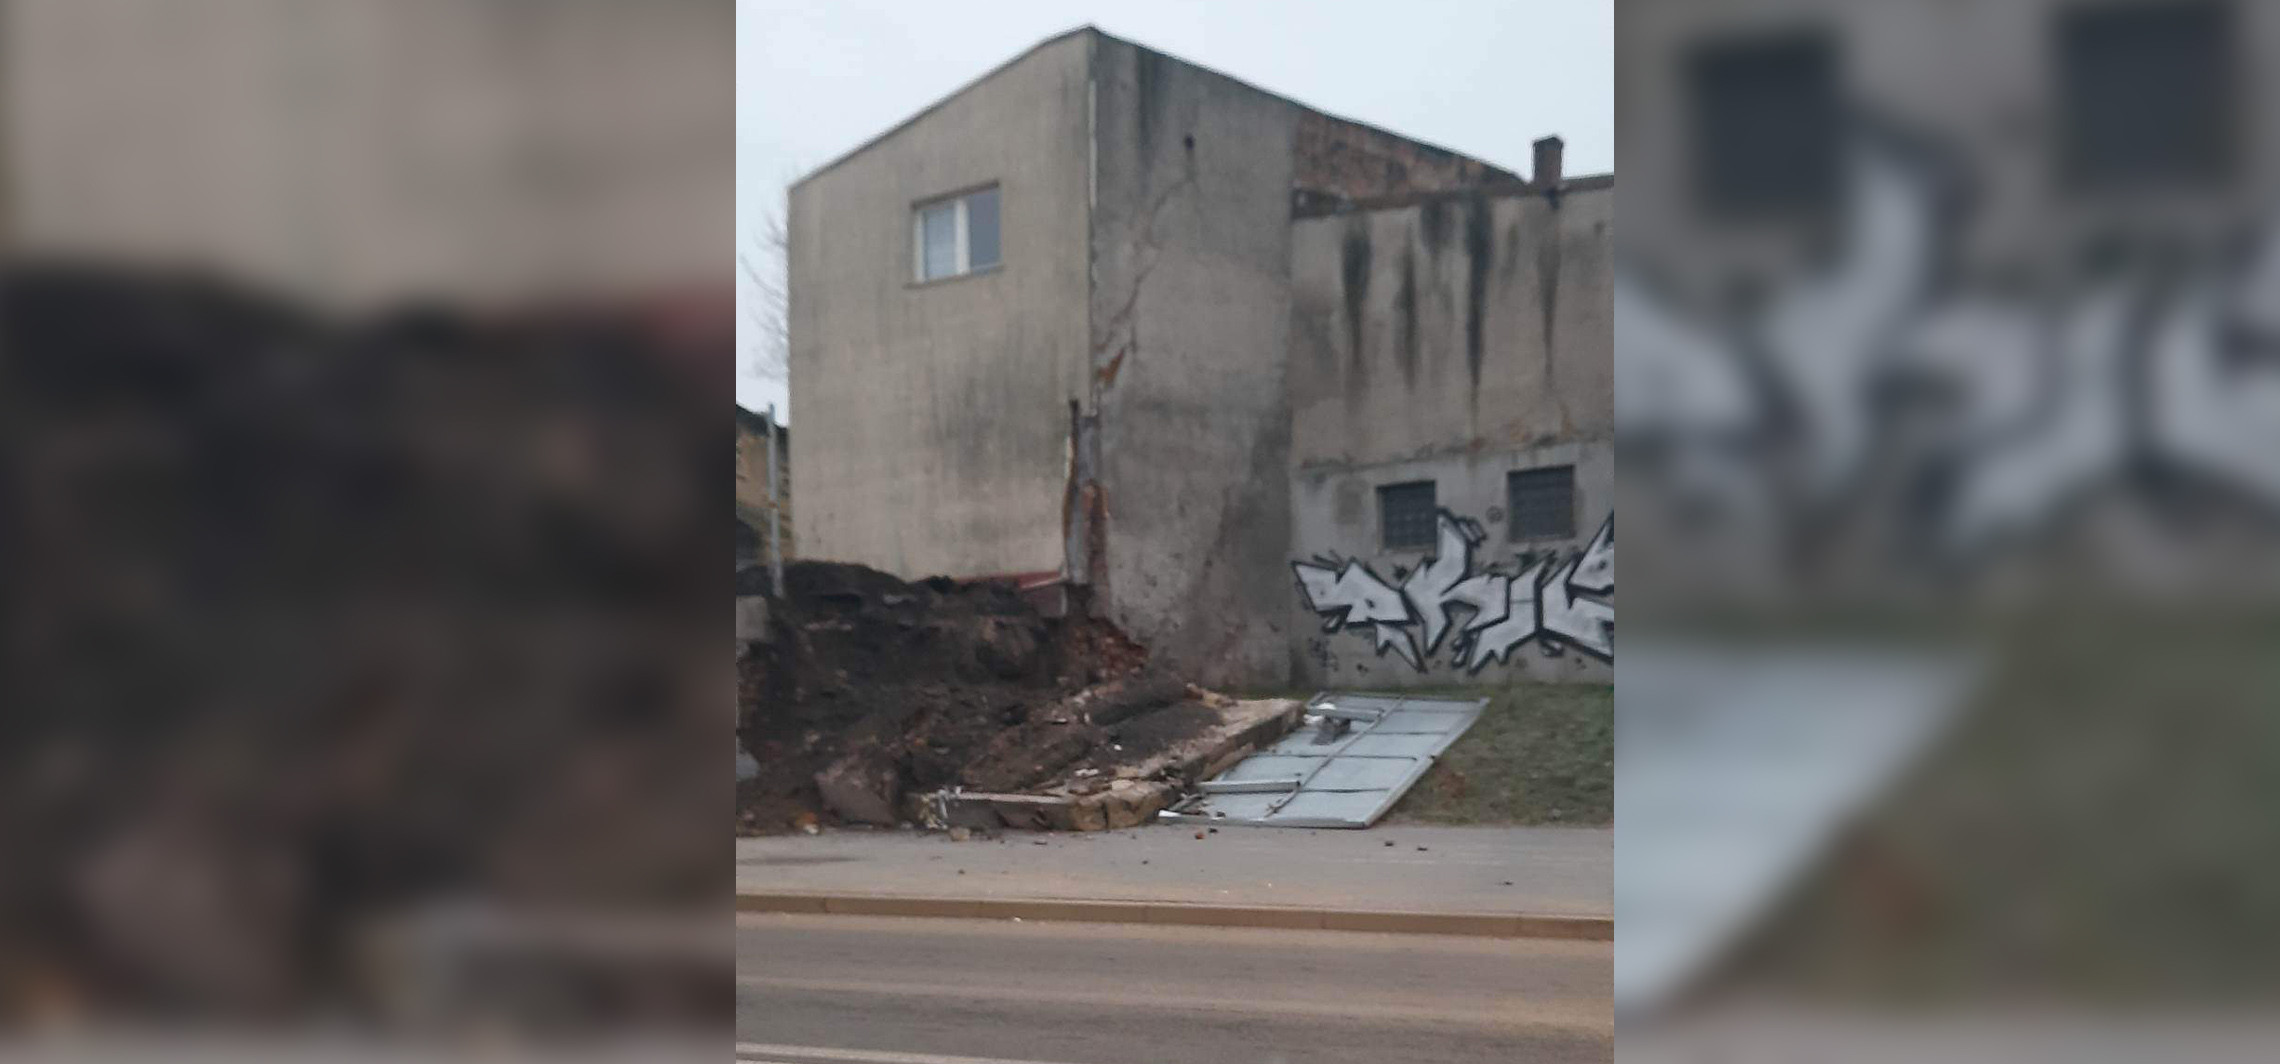 Inowrocław - W centrum runął mur. Ucierpiał też fragment budynku